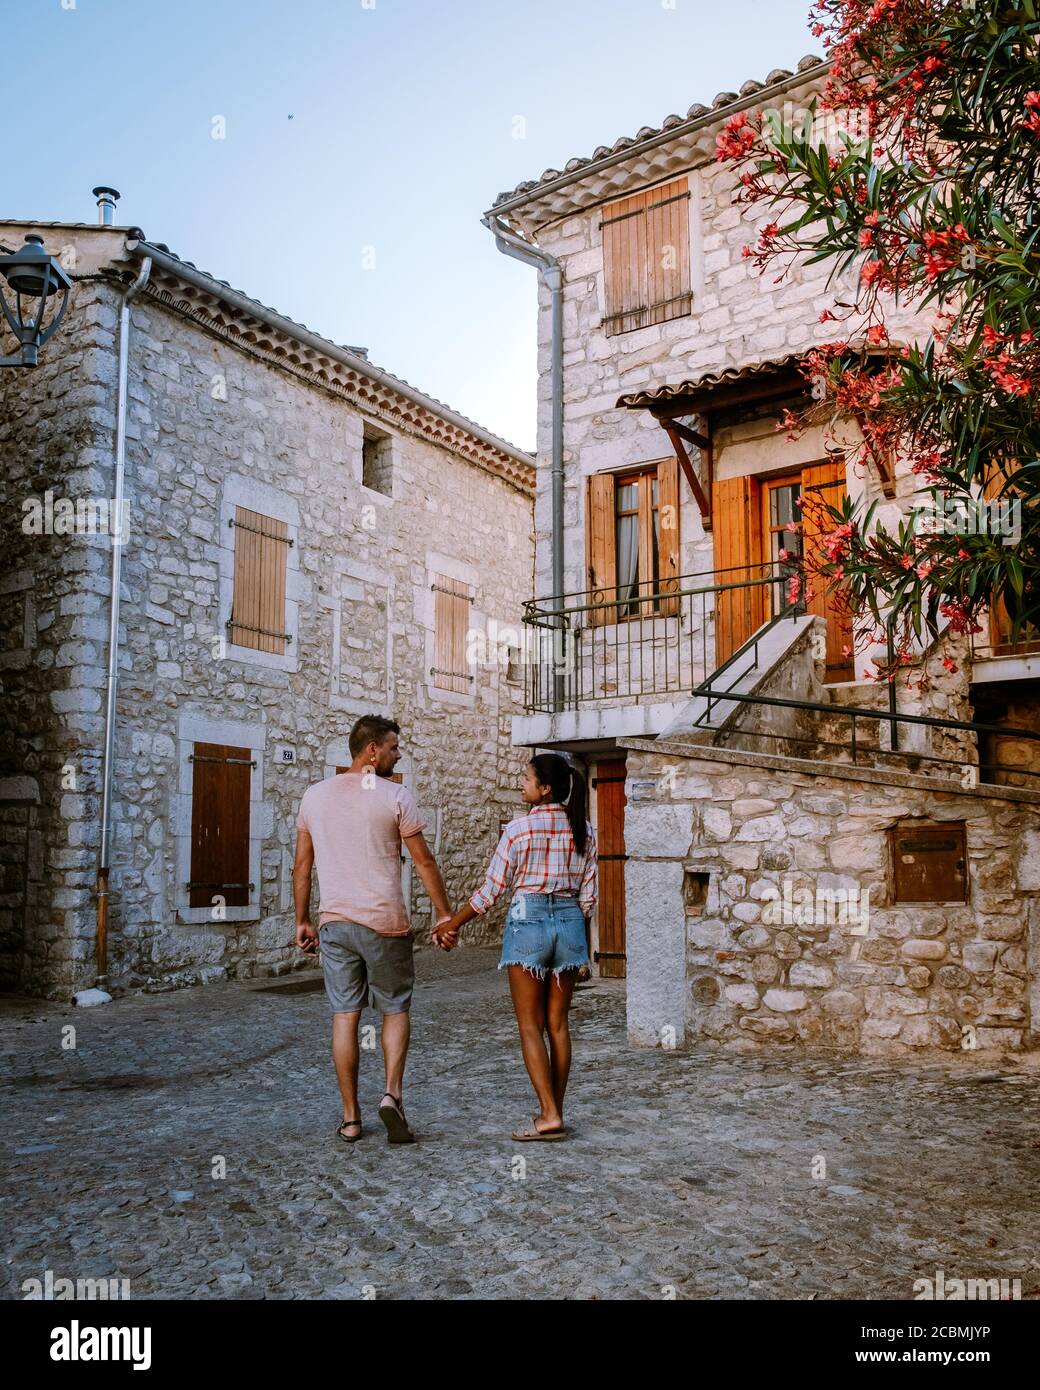 Una coppia visita Ruoms, il borgo medievale di Ruoms con le sue vecchie case in mattoni e i piccoli vicoli sul fiume Ardeche in Francia Foto Stock